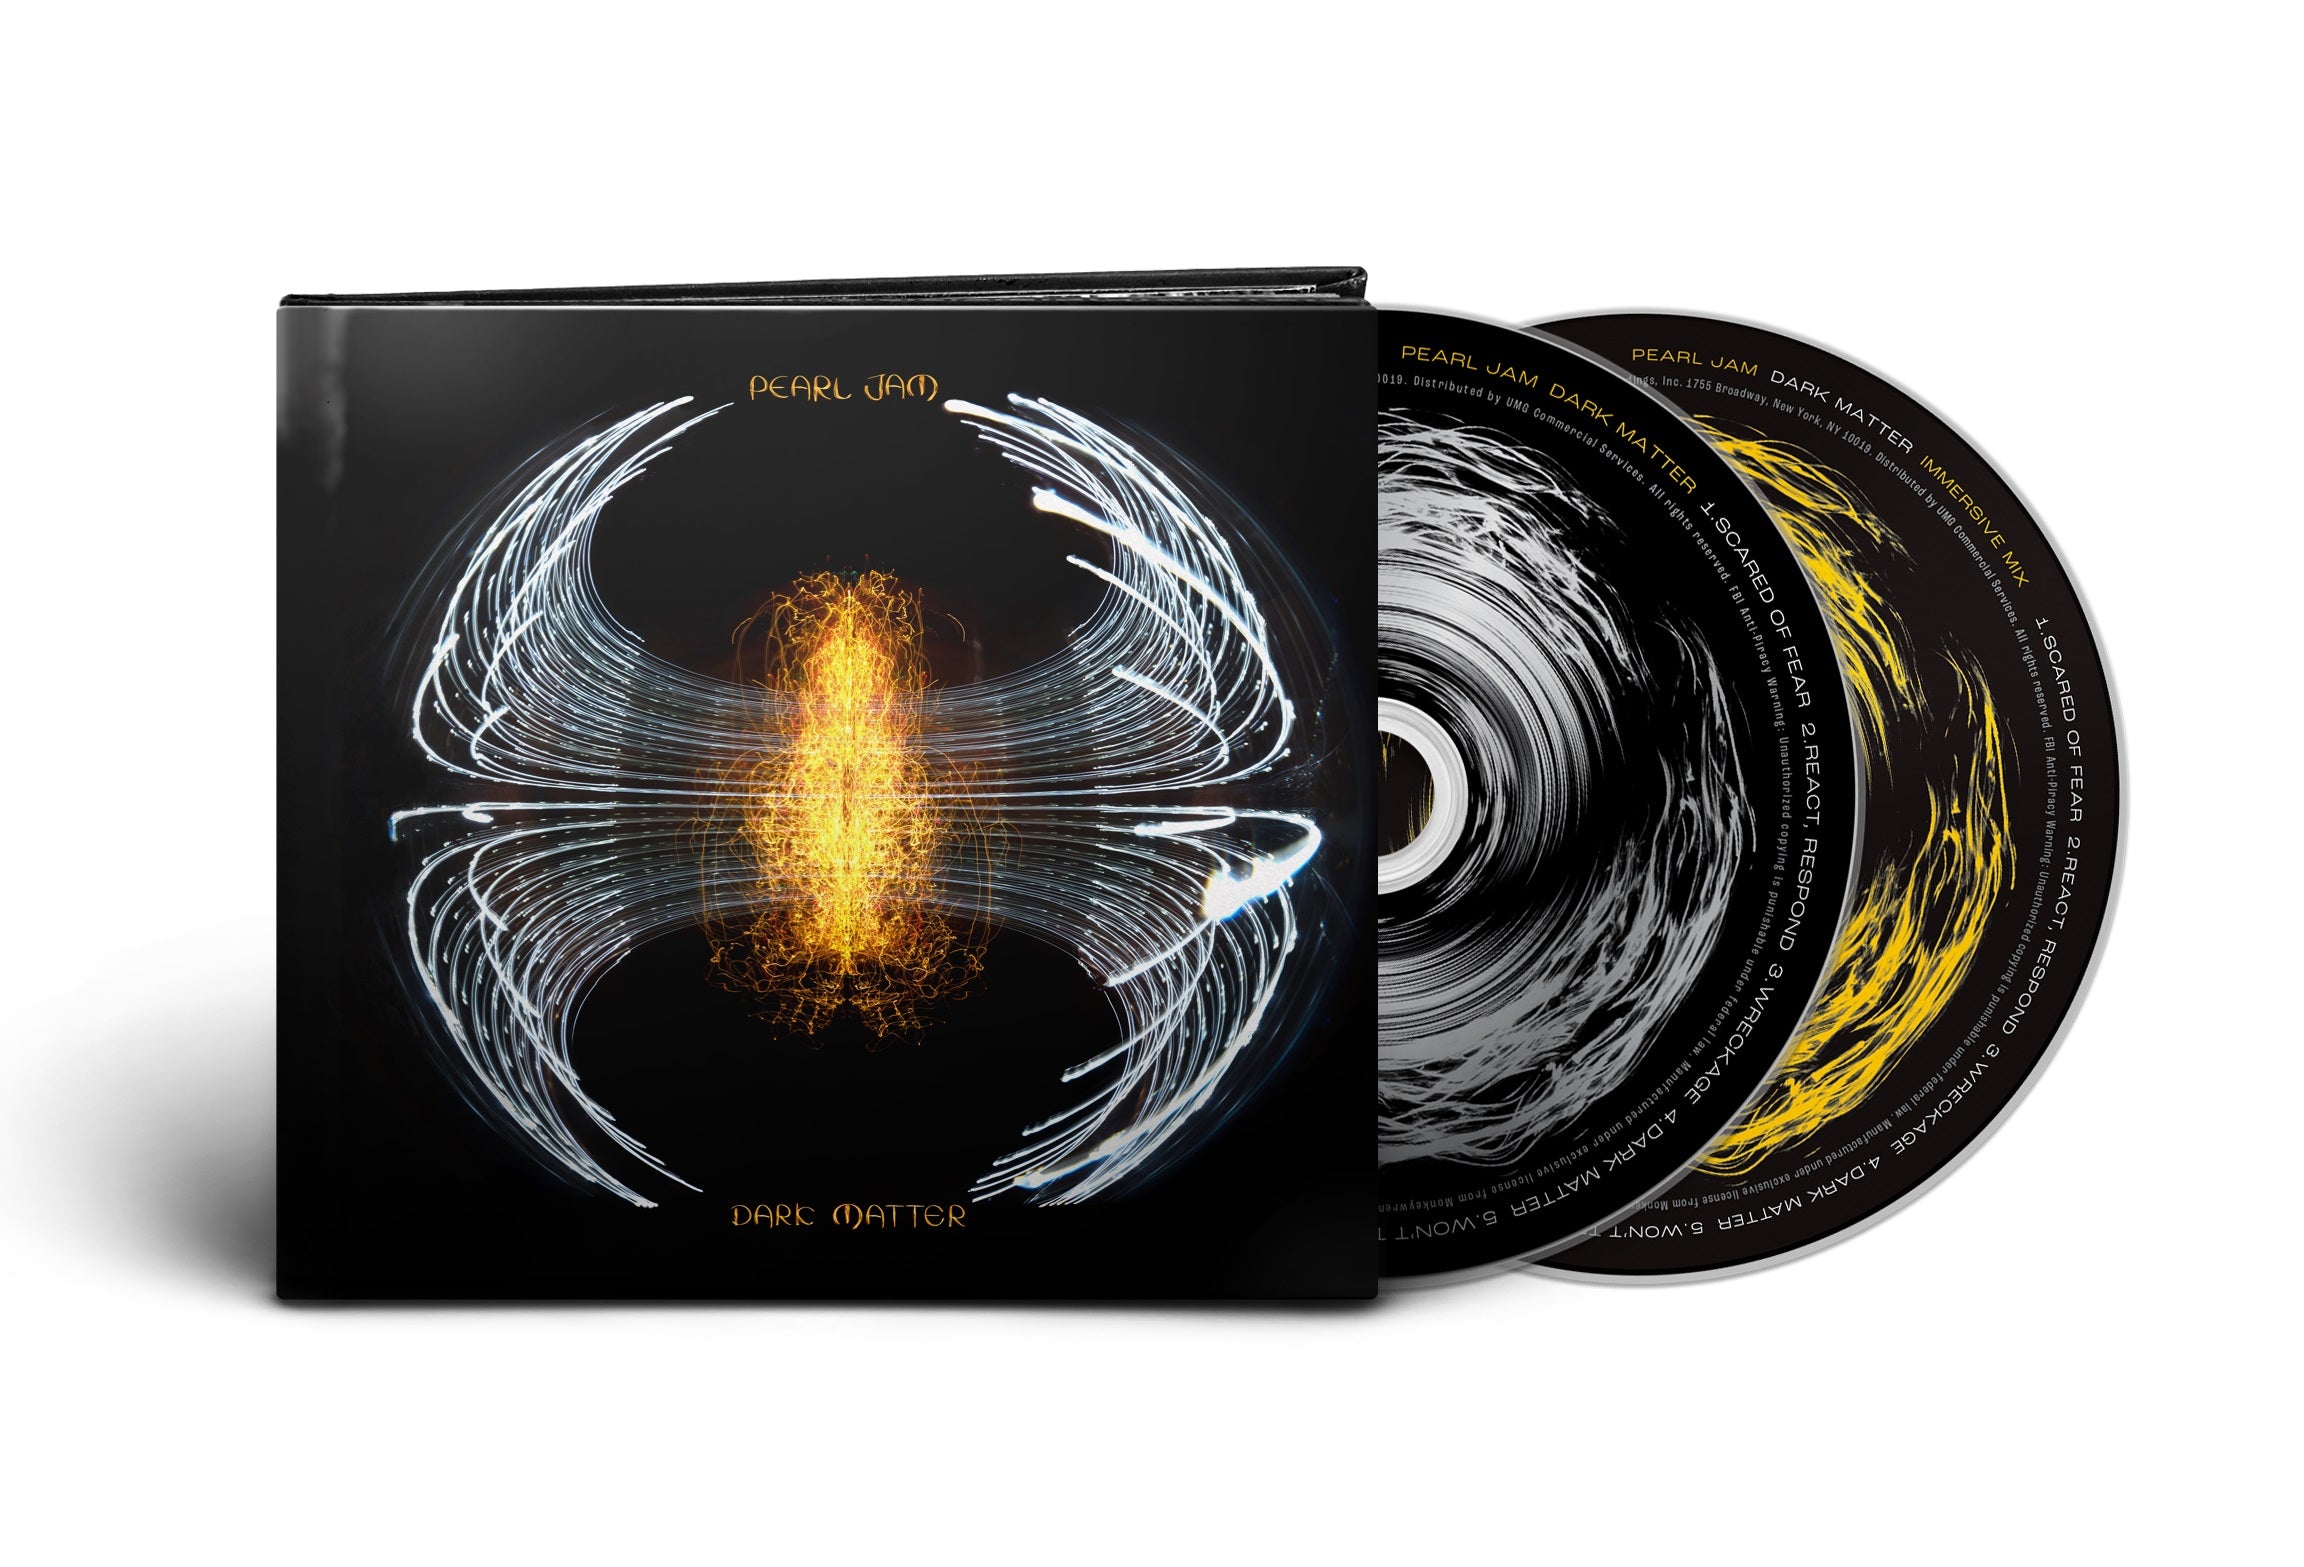 Pearl Jam- Dark Matter (CD/BR Audio)